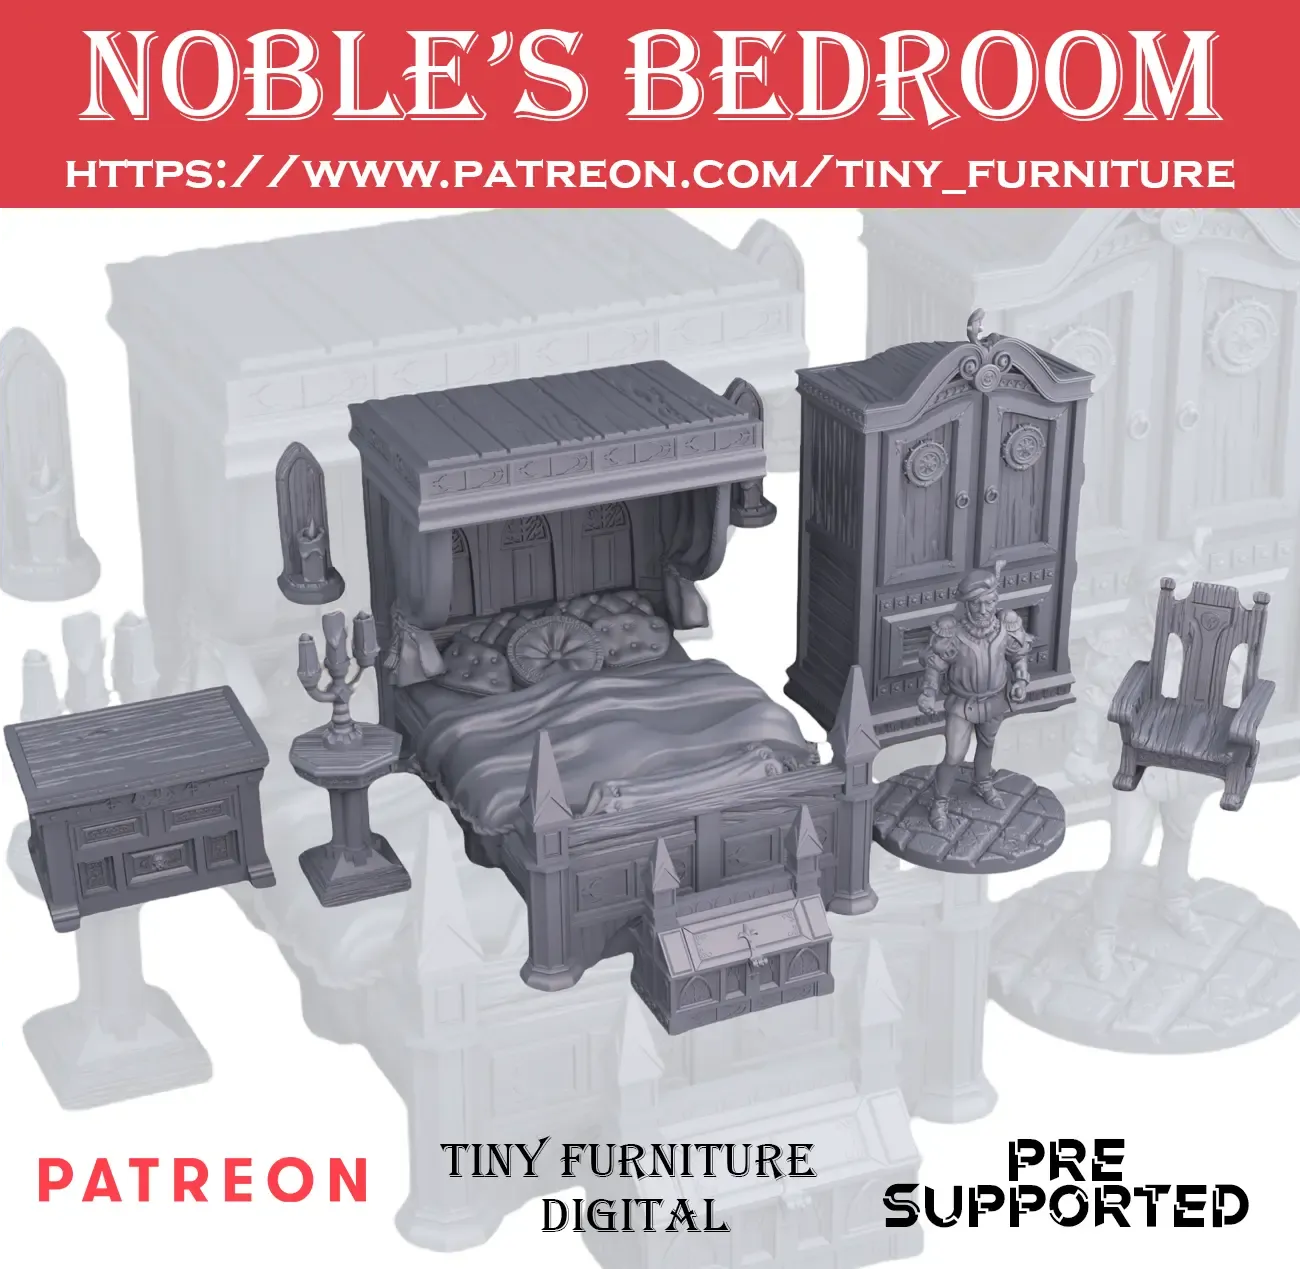 Noble's bedroom